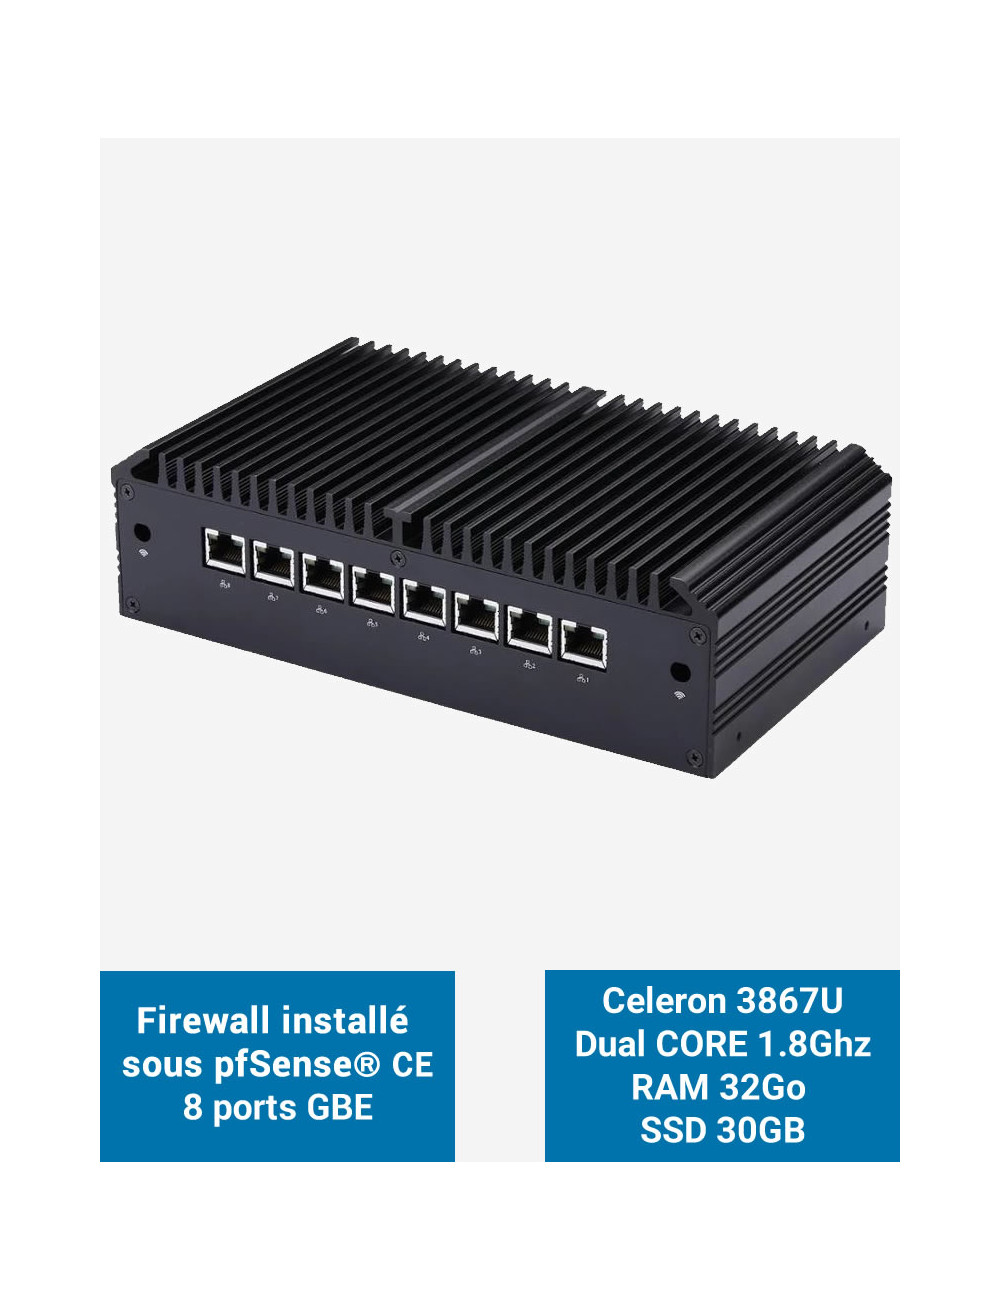 Firewall Q8x Celeron 3867U 8 ports GbE 32GB 30GB